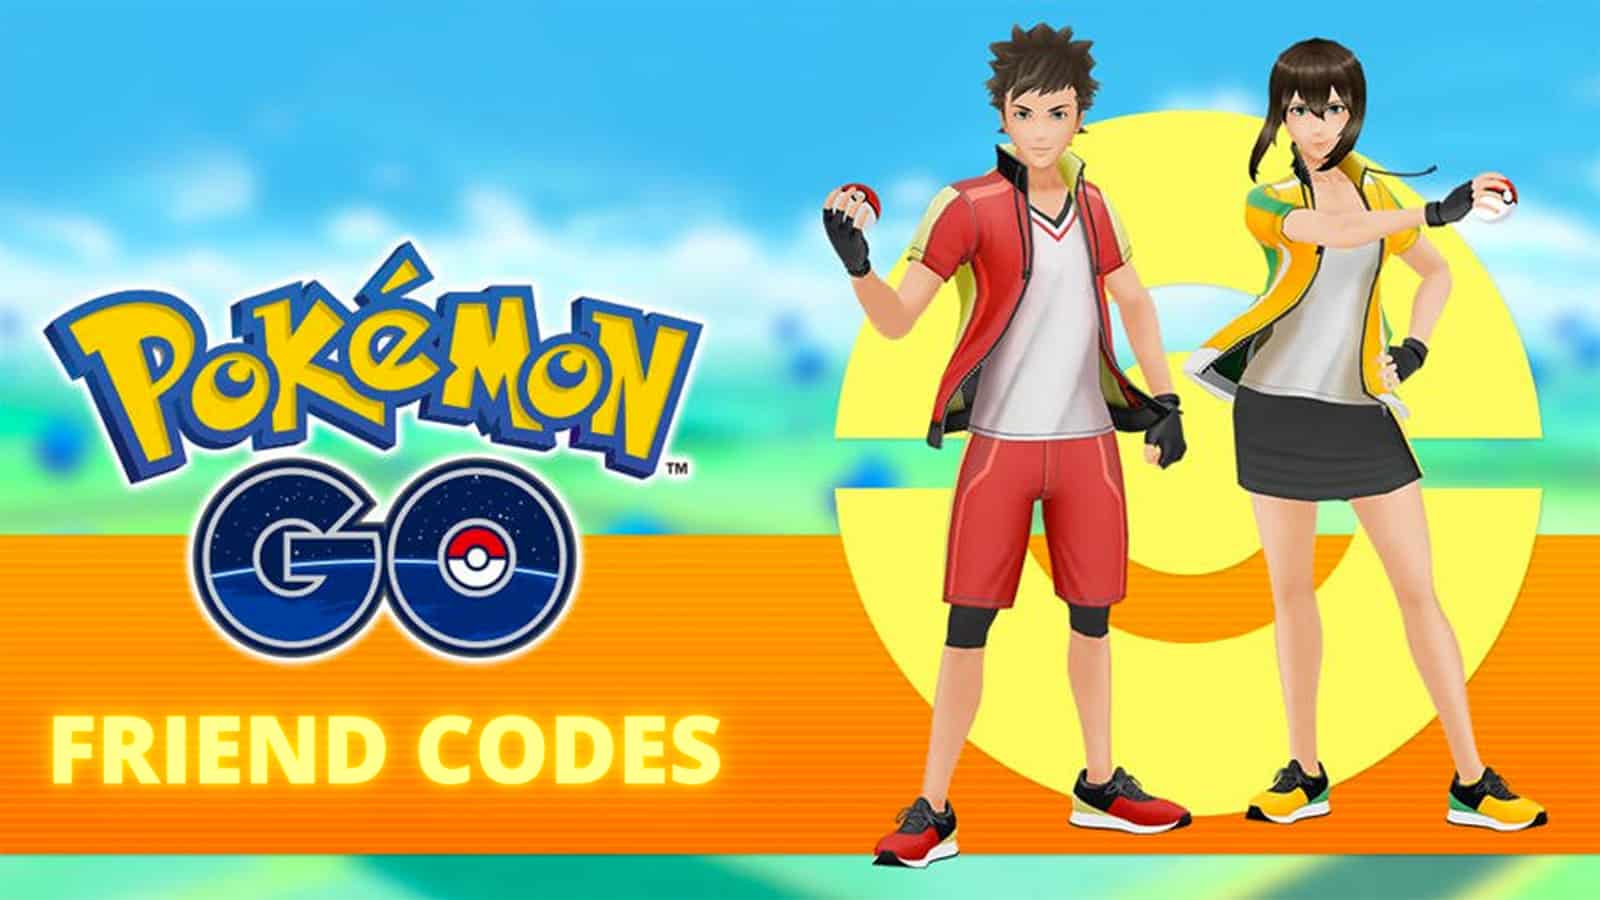 Pokemon Go'da arkadaş kodlarını paylaşan iki eğitmen